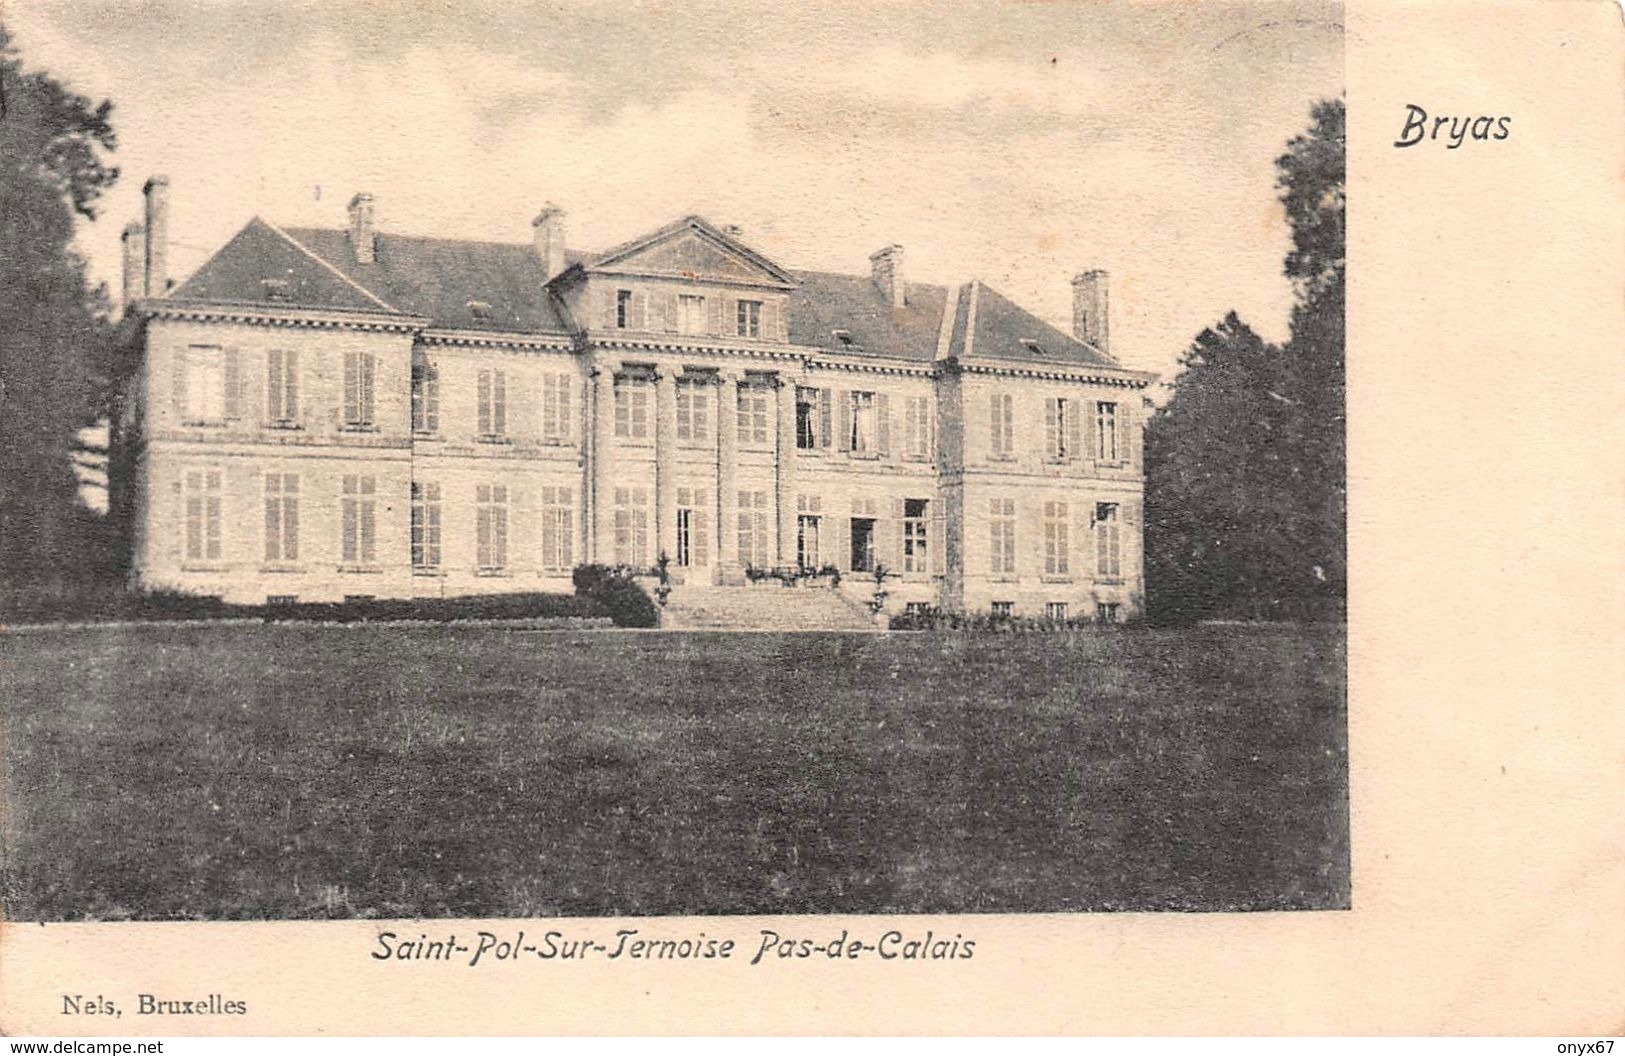 SAINT-POL-SUR-TERNOISE (62-Pas De Calais) Château De Bryas  Editions NELS, Bruxelles - Saint Pol Sur Ternoise